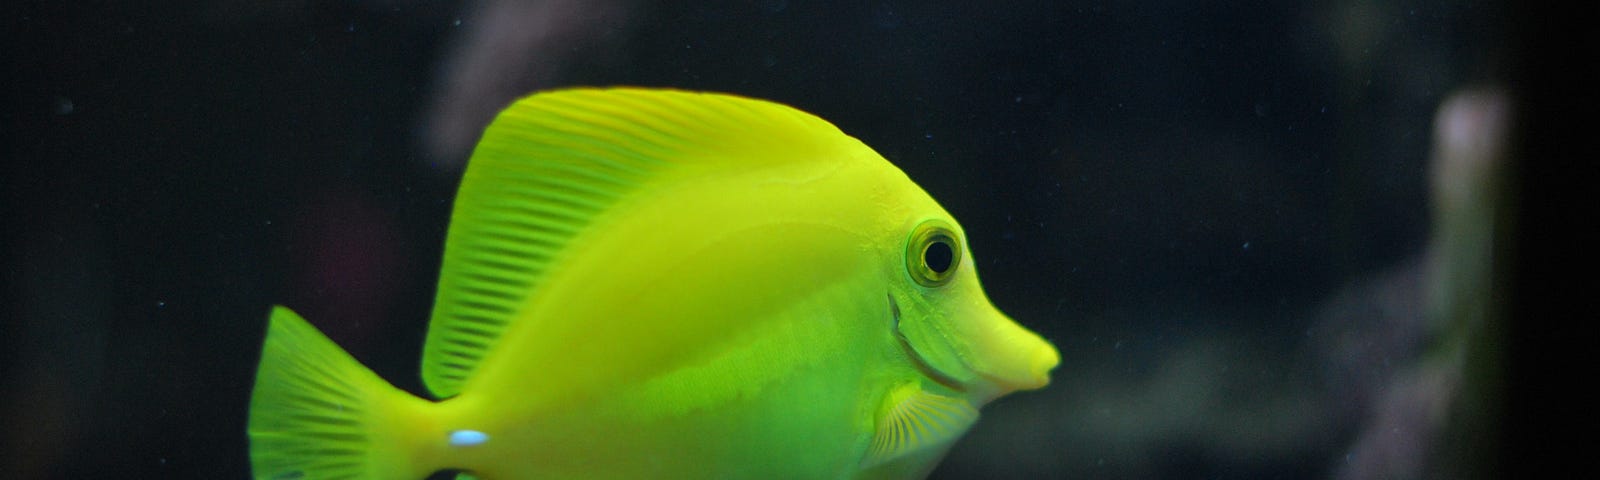 bright colored fish